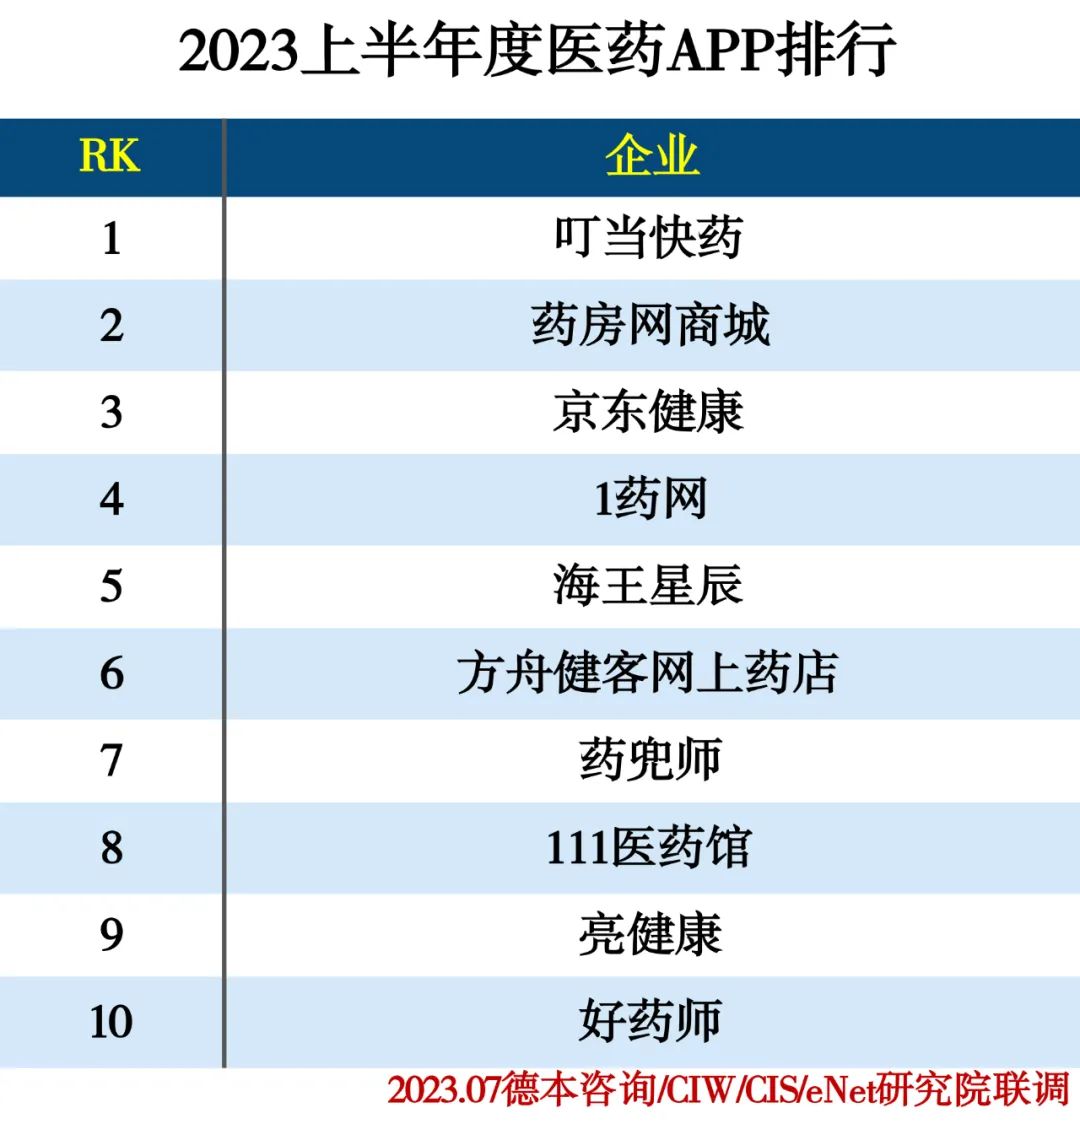 2023上半年度APP分类排行榜